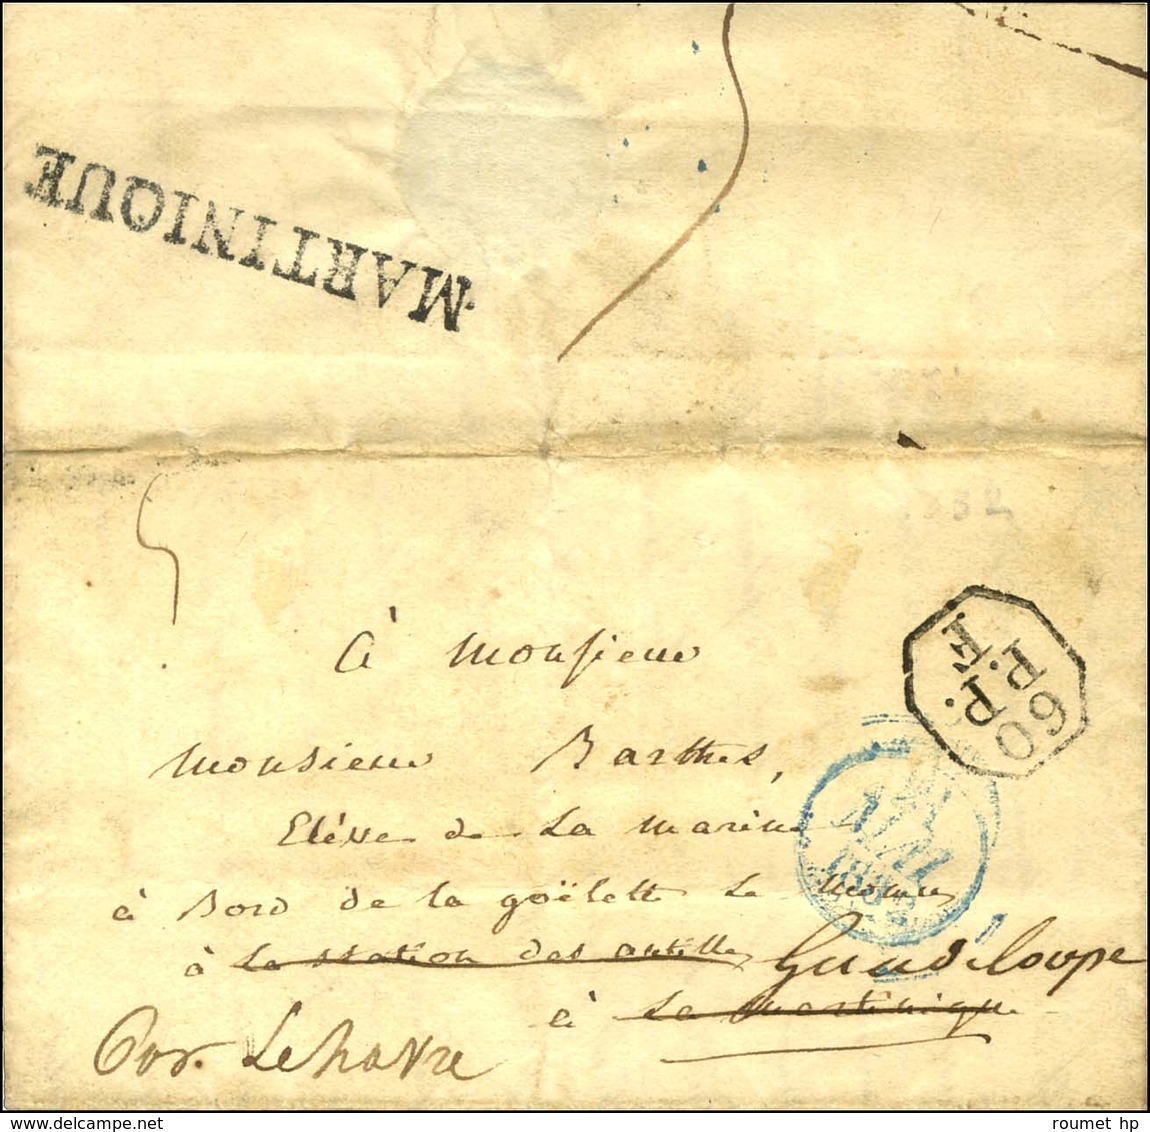 60 / P.P. / F Sur Lettre Avec Texte Daté De Paris Le 19 Mai 1832 Adressée à Un élève De La Marine à Bord D'une Goëlette  - Maritime Post